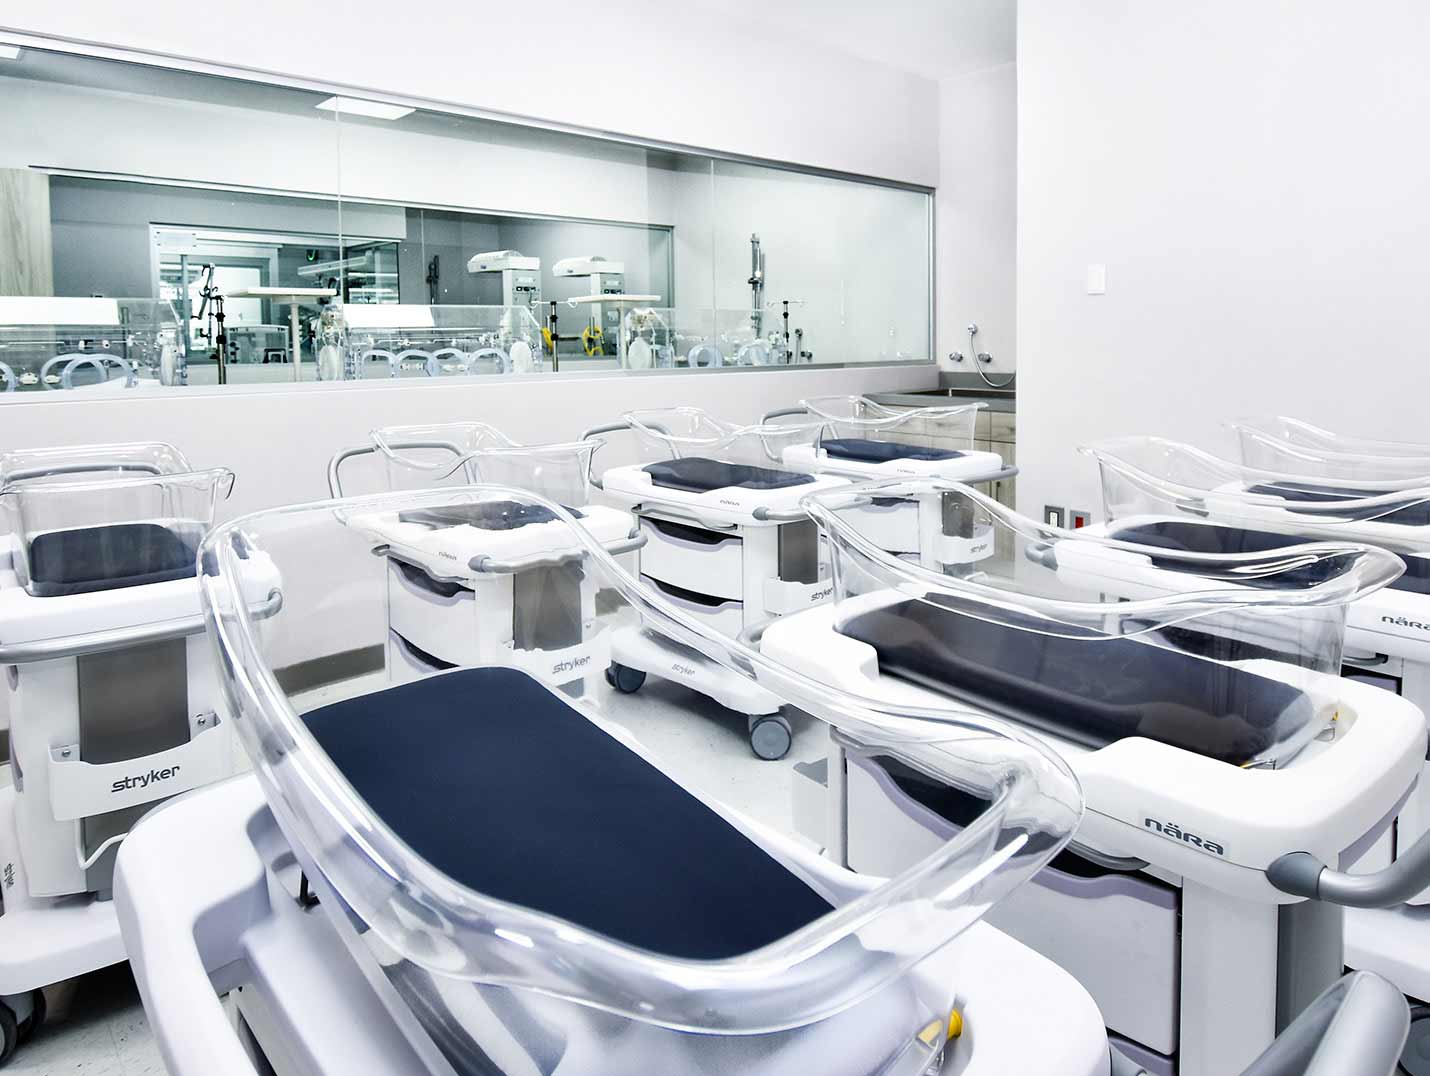 Area de neonatología con paredes blancas y 8 cuneros. Al fondo un cristal donde se ve la sala de incubadoras.